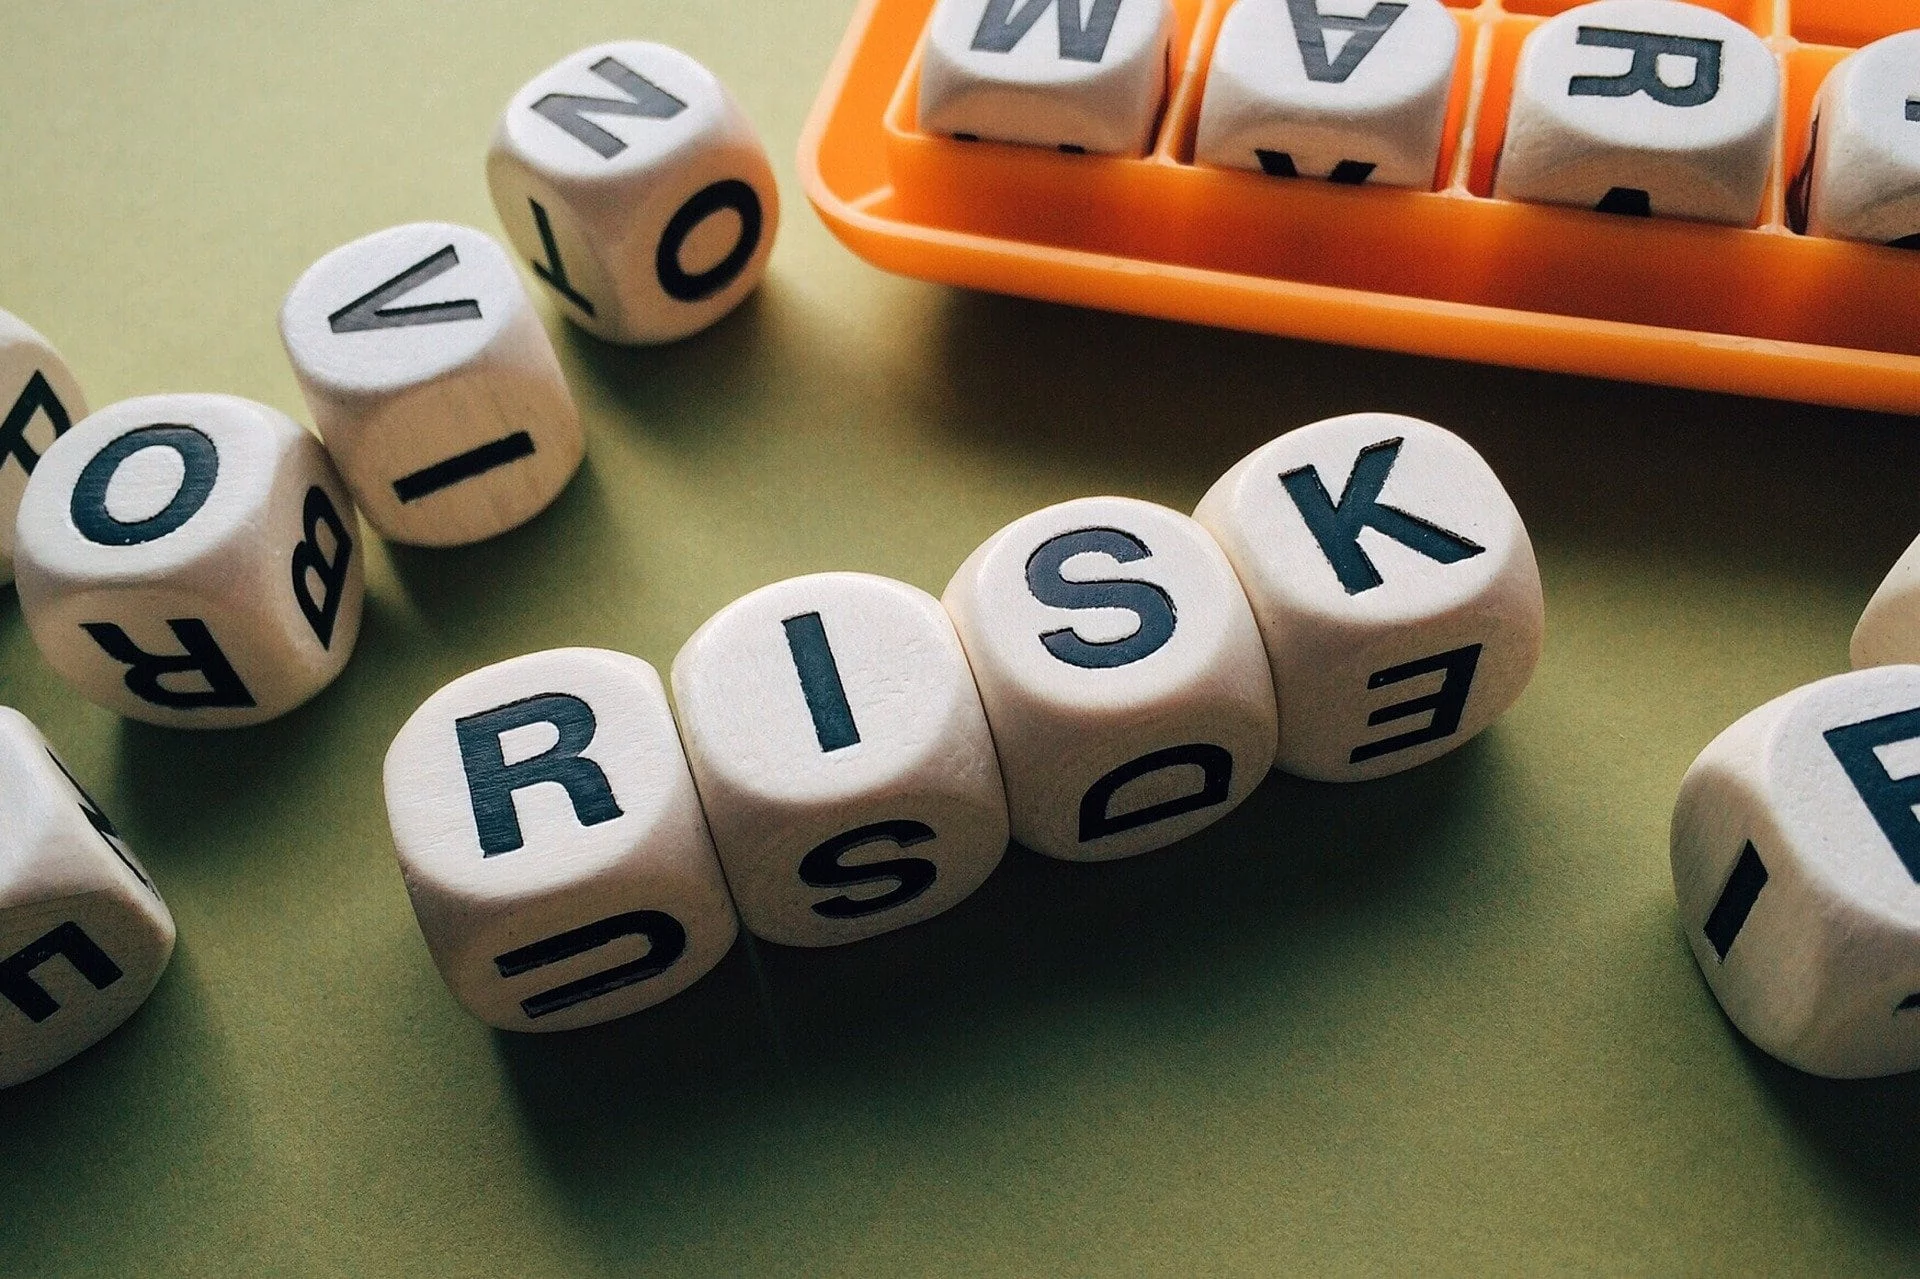 Le management des risques en 2020 : ça sert à quoi pour les entreprises ?